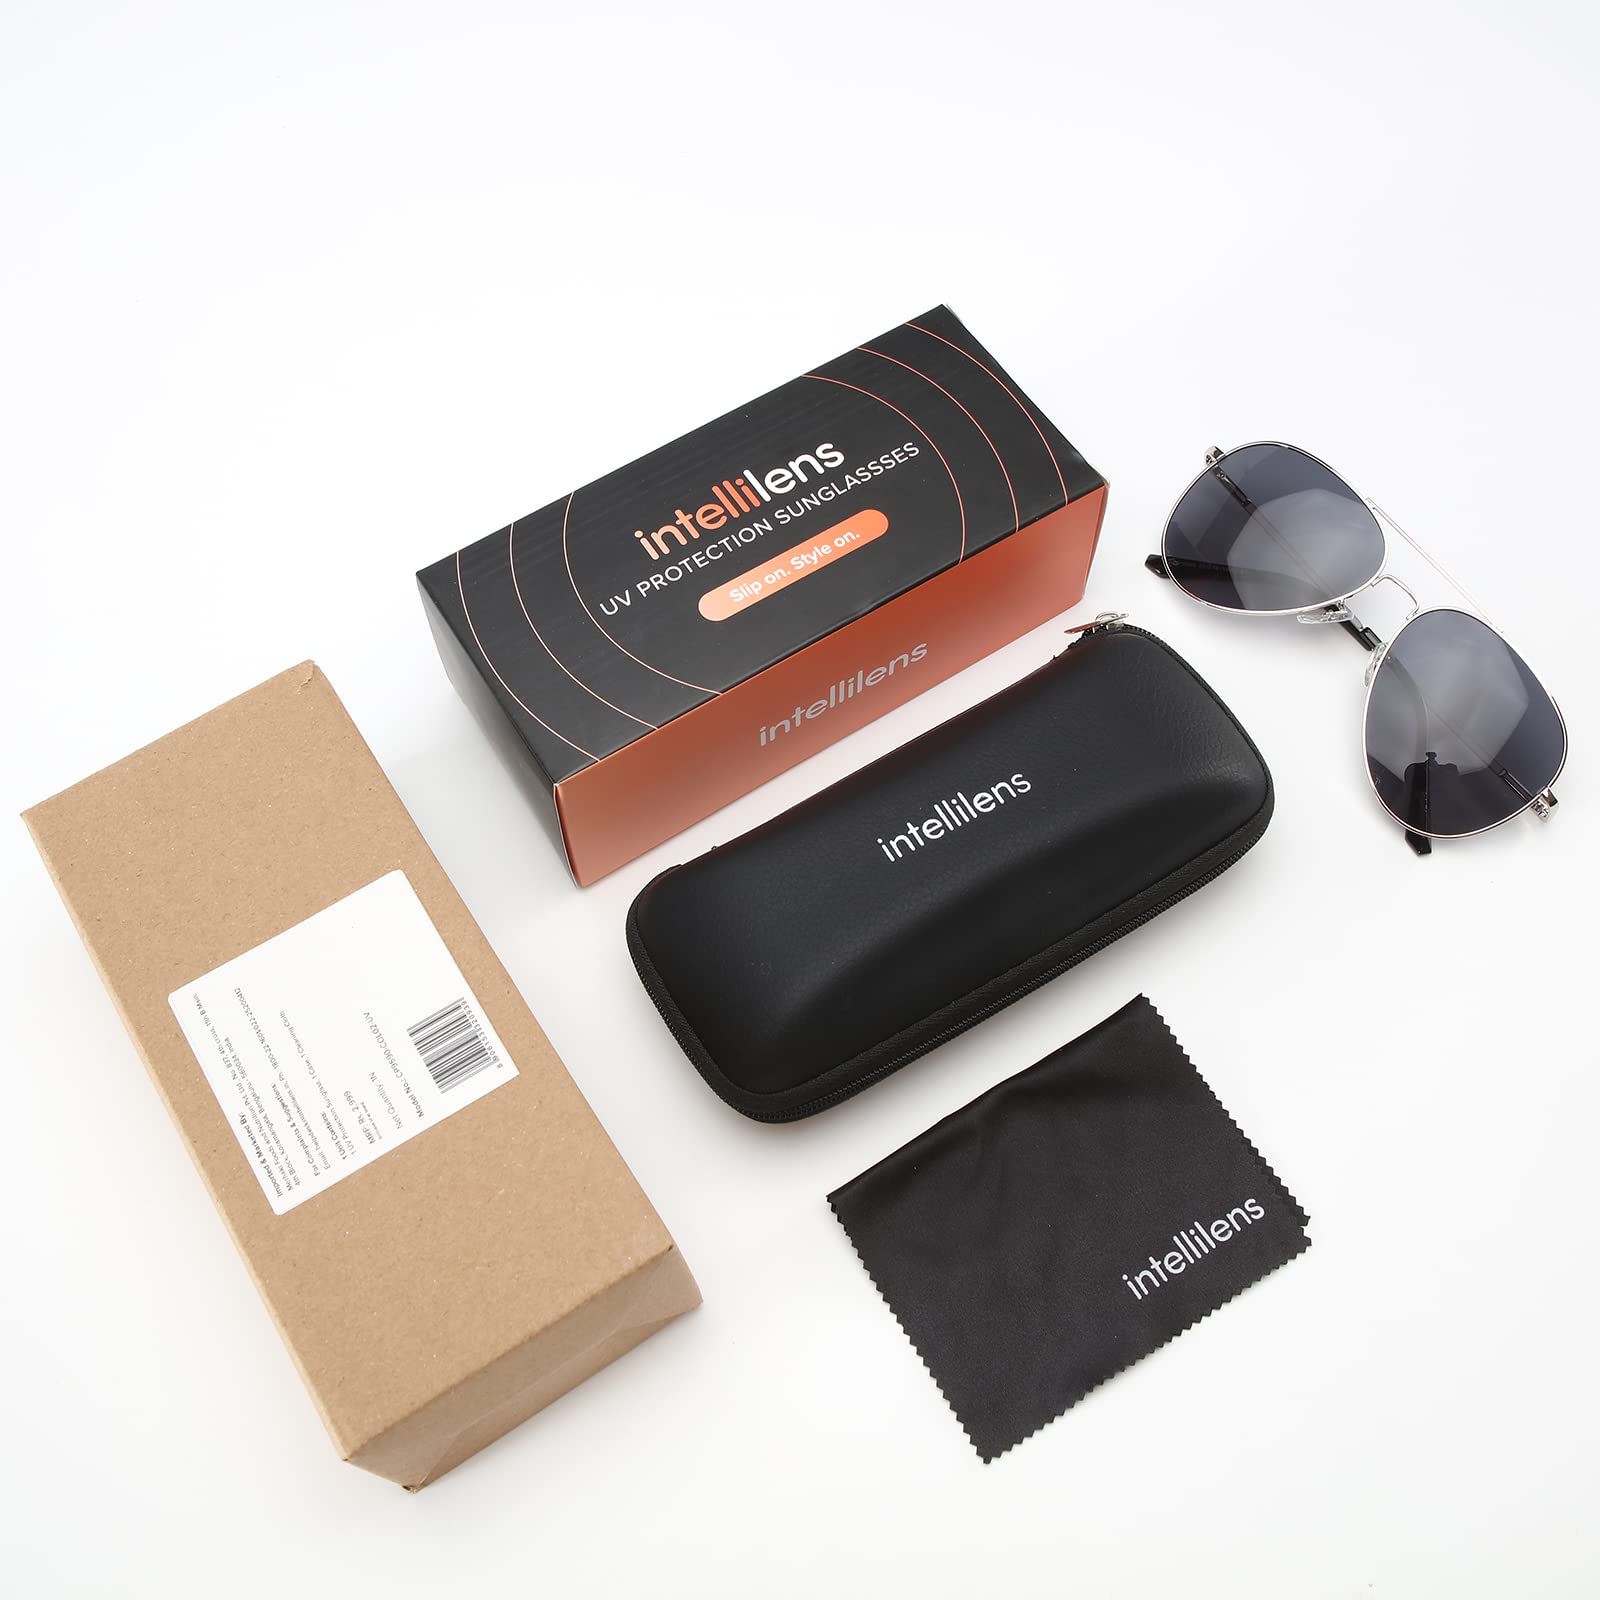 Intellilens Aviator UV Protected Sunglasses For Men & Women | Goggles for Men & Women (Silver & Black) (60-20-145) - Pack of 1